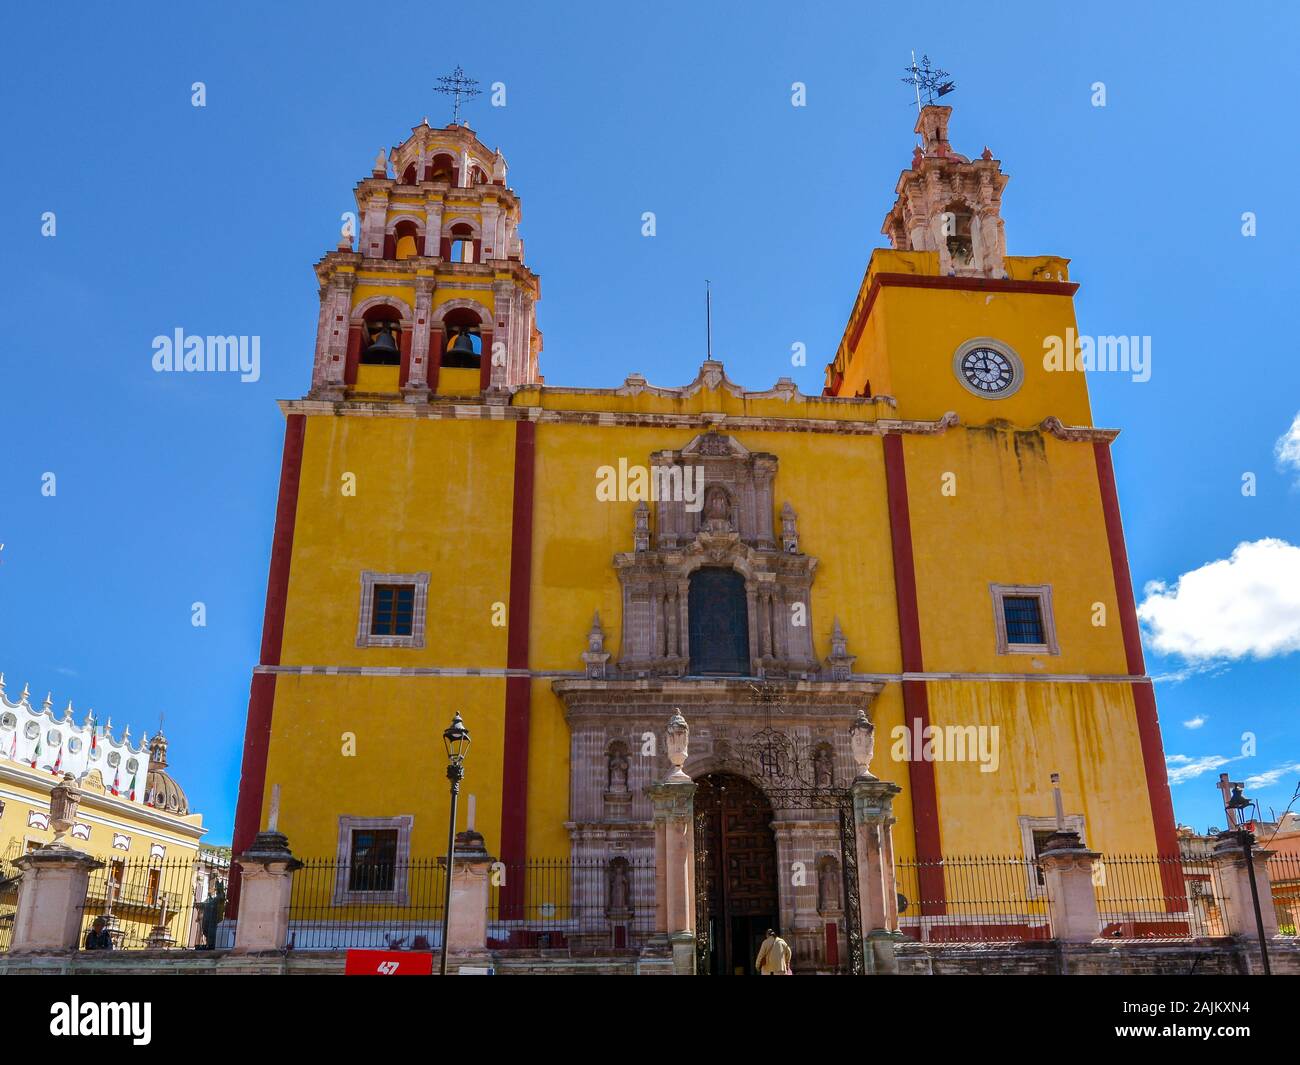 Basilica of Our Lady of Guanajuato - Guanajuato, Mexico Stock Photo